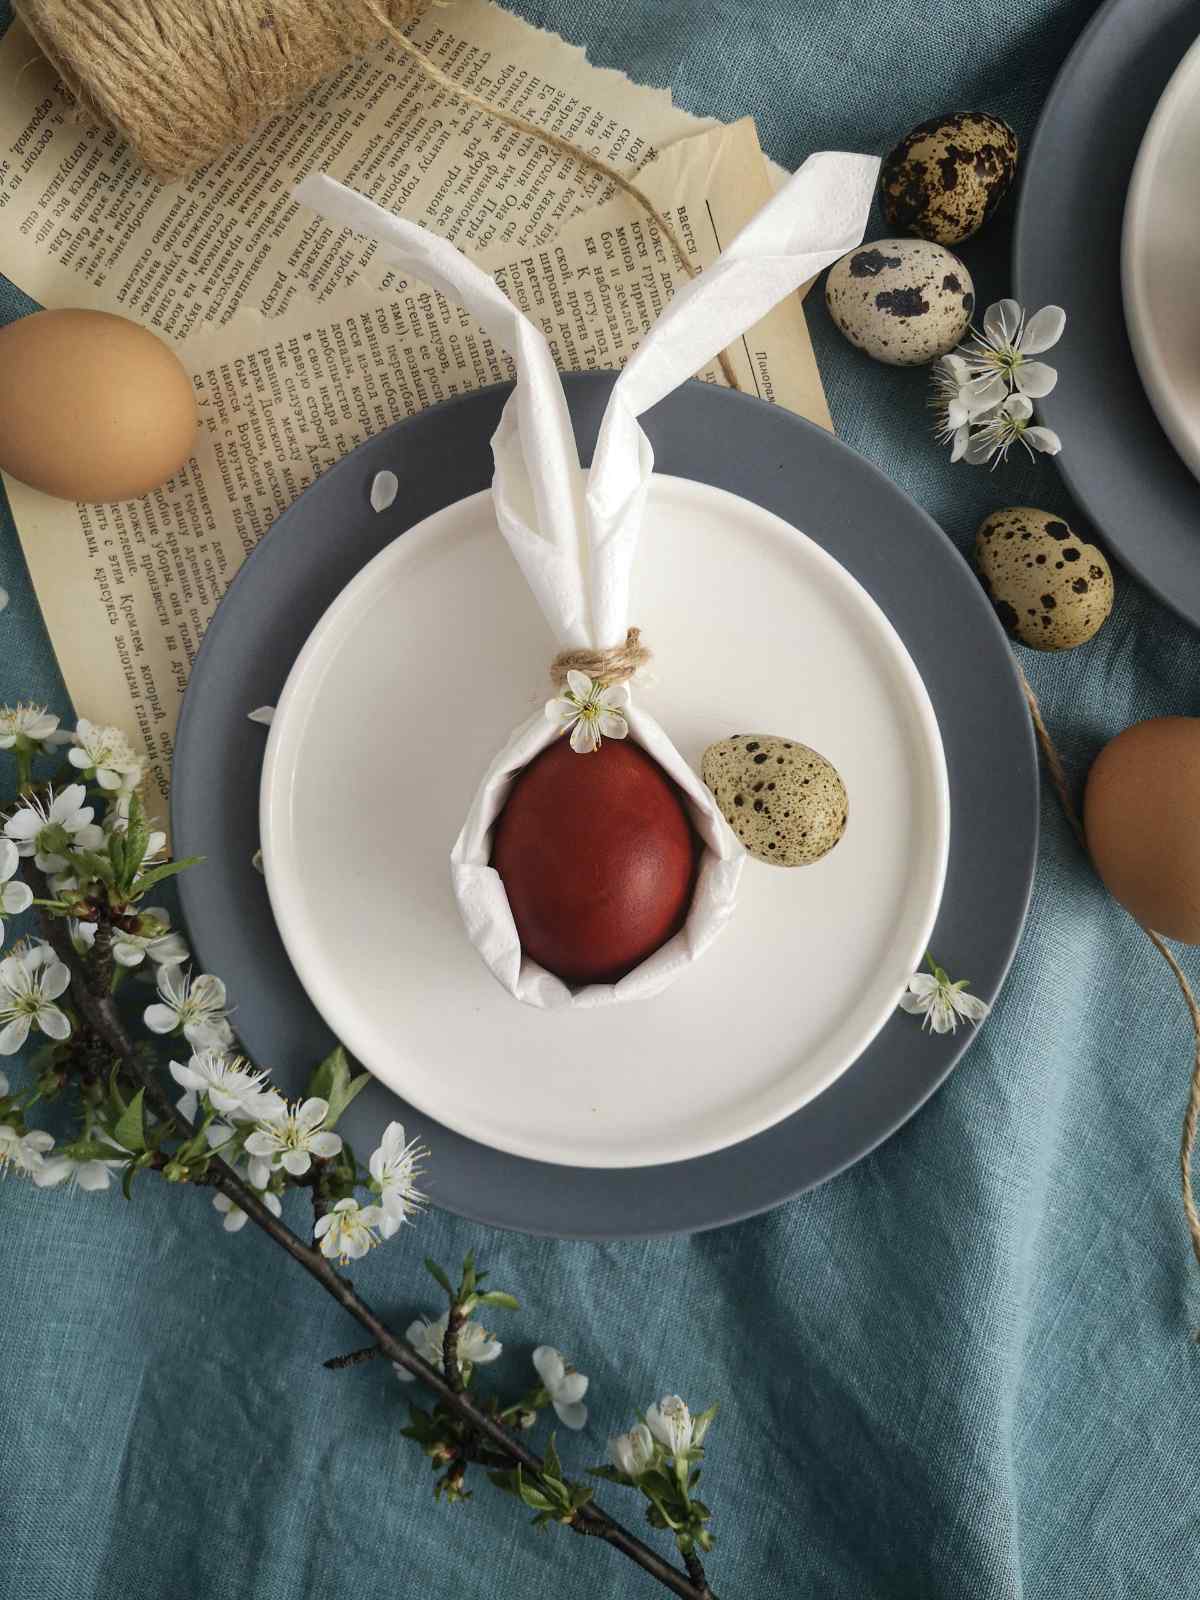 Décoration de table pour Pâques avec des oeufs et une serviette pliée en forme de lapin